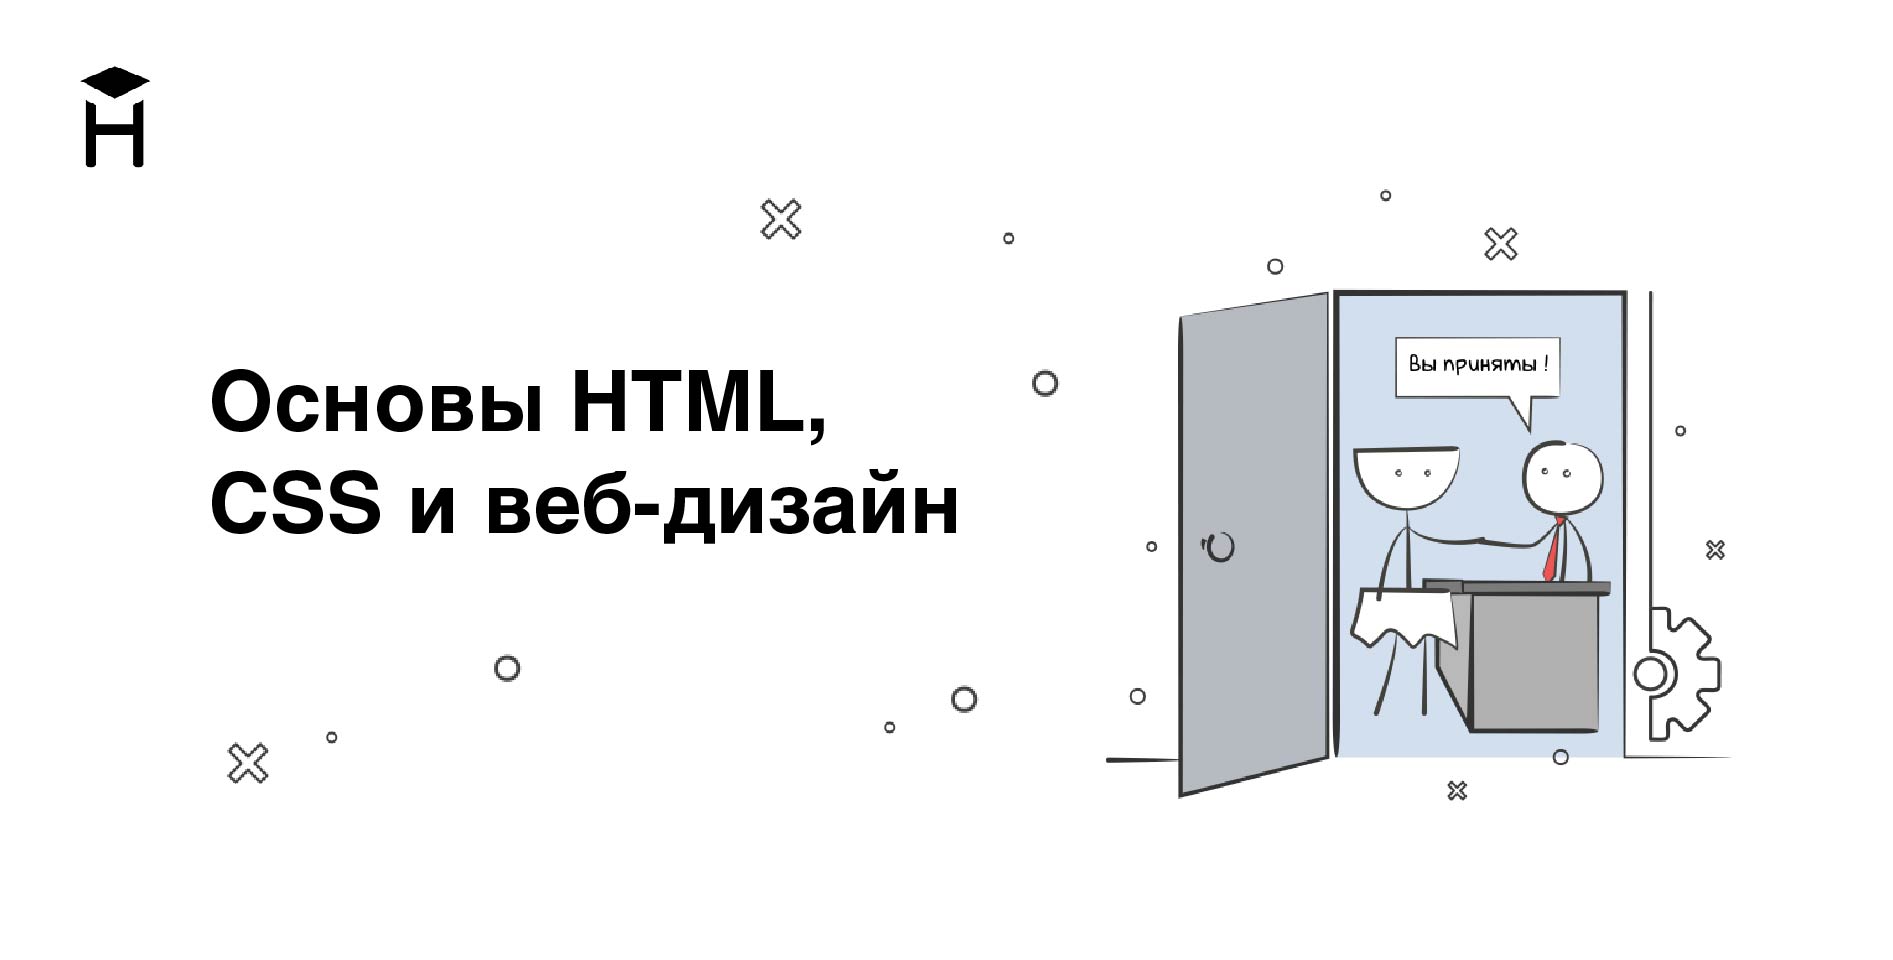 Hexlet — Основы HTML, CSS и веб-дизайн